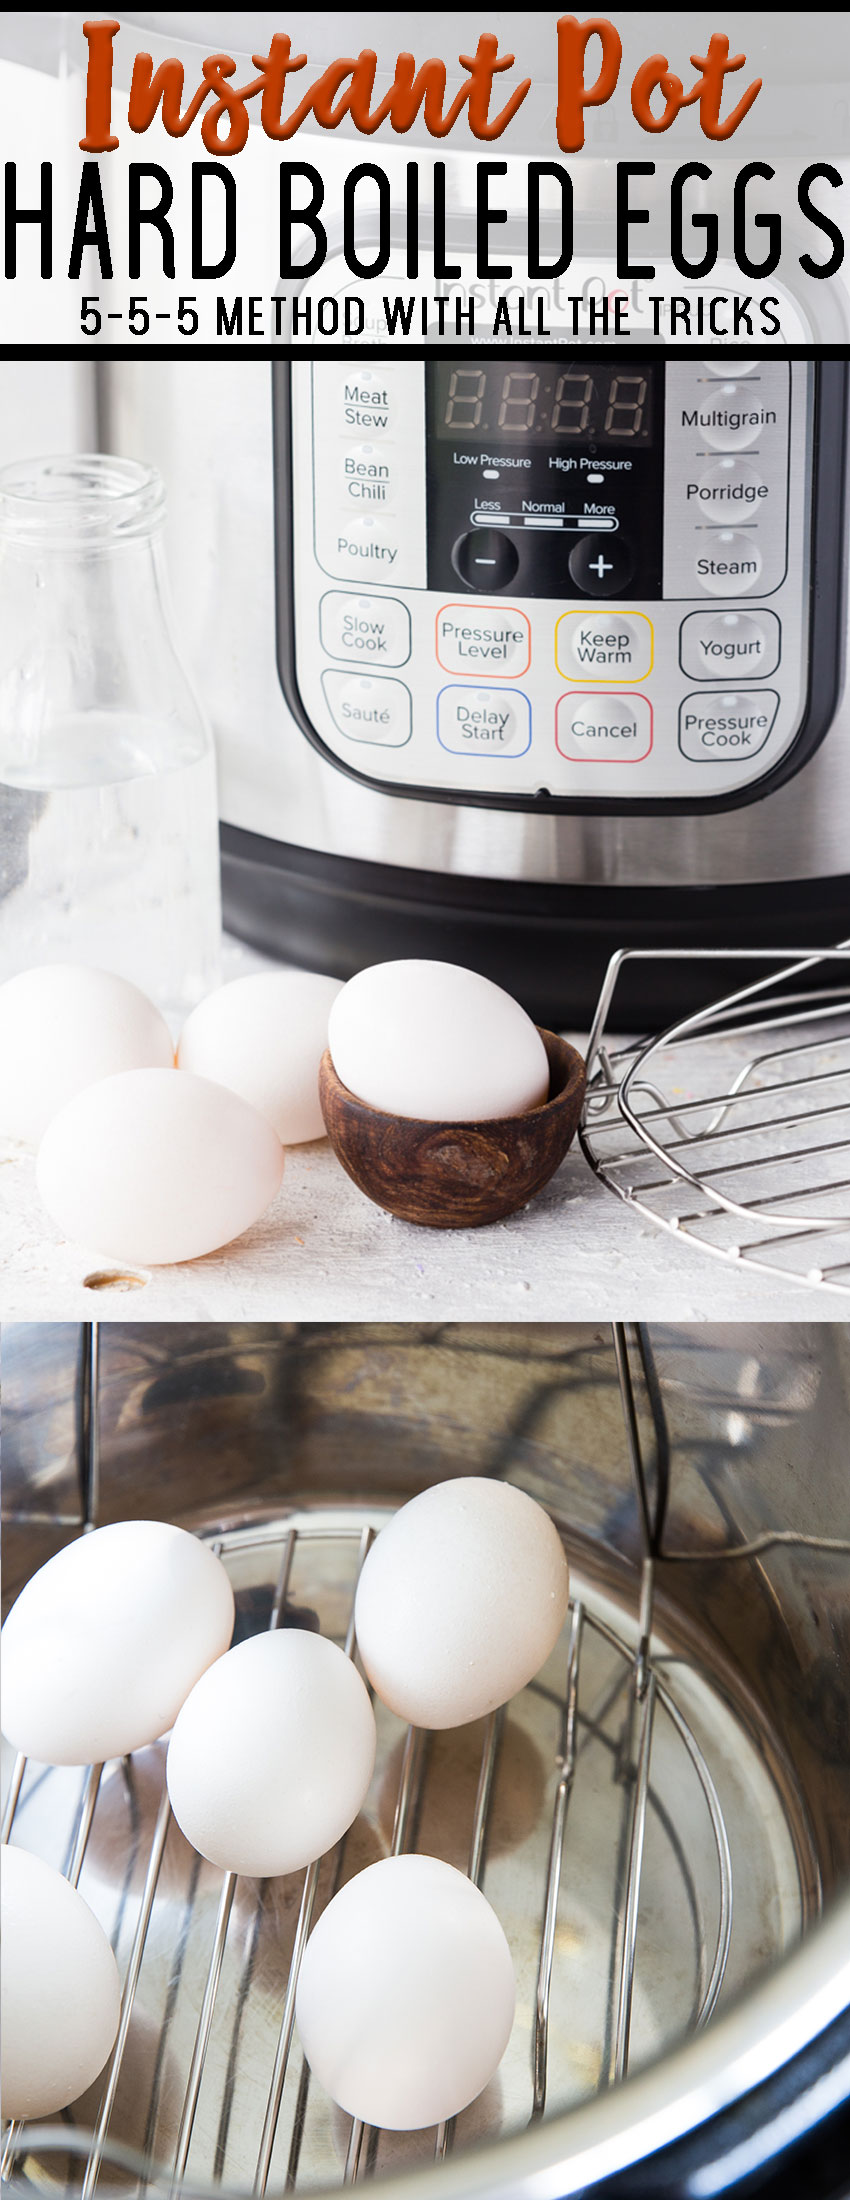 Instant Pot hard boiled eggs, 5-5-5 method and tricks for peeling hard boiled eggs